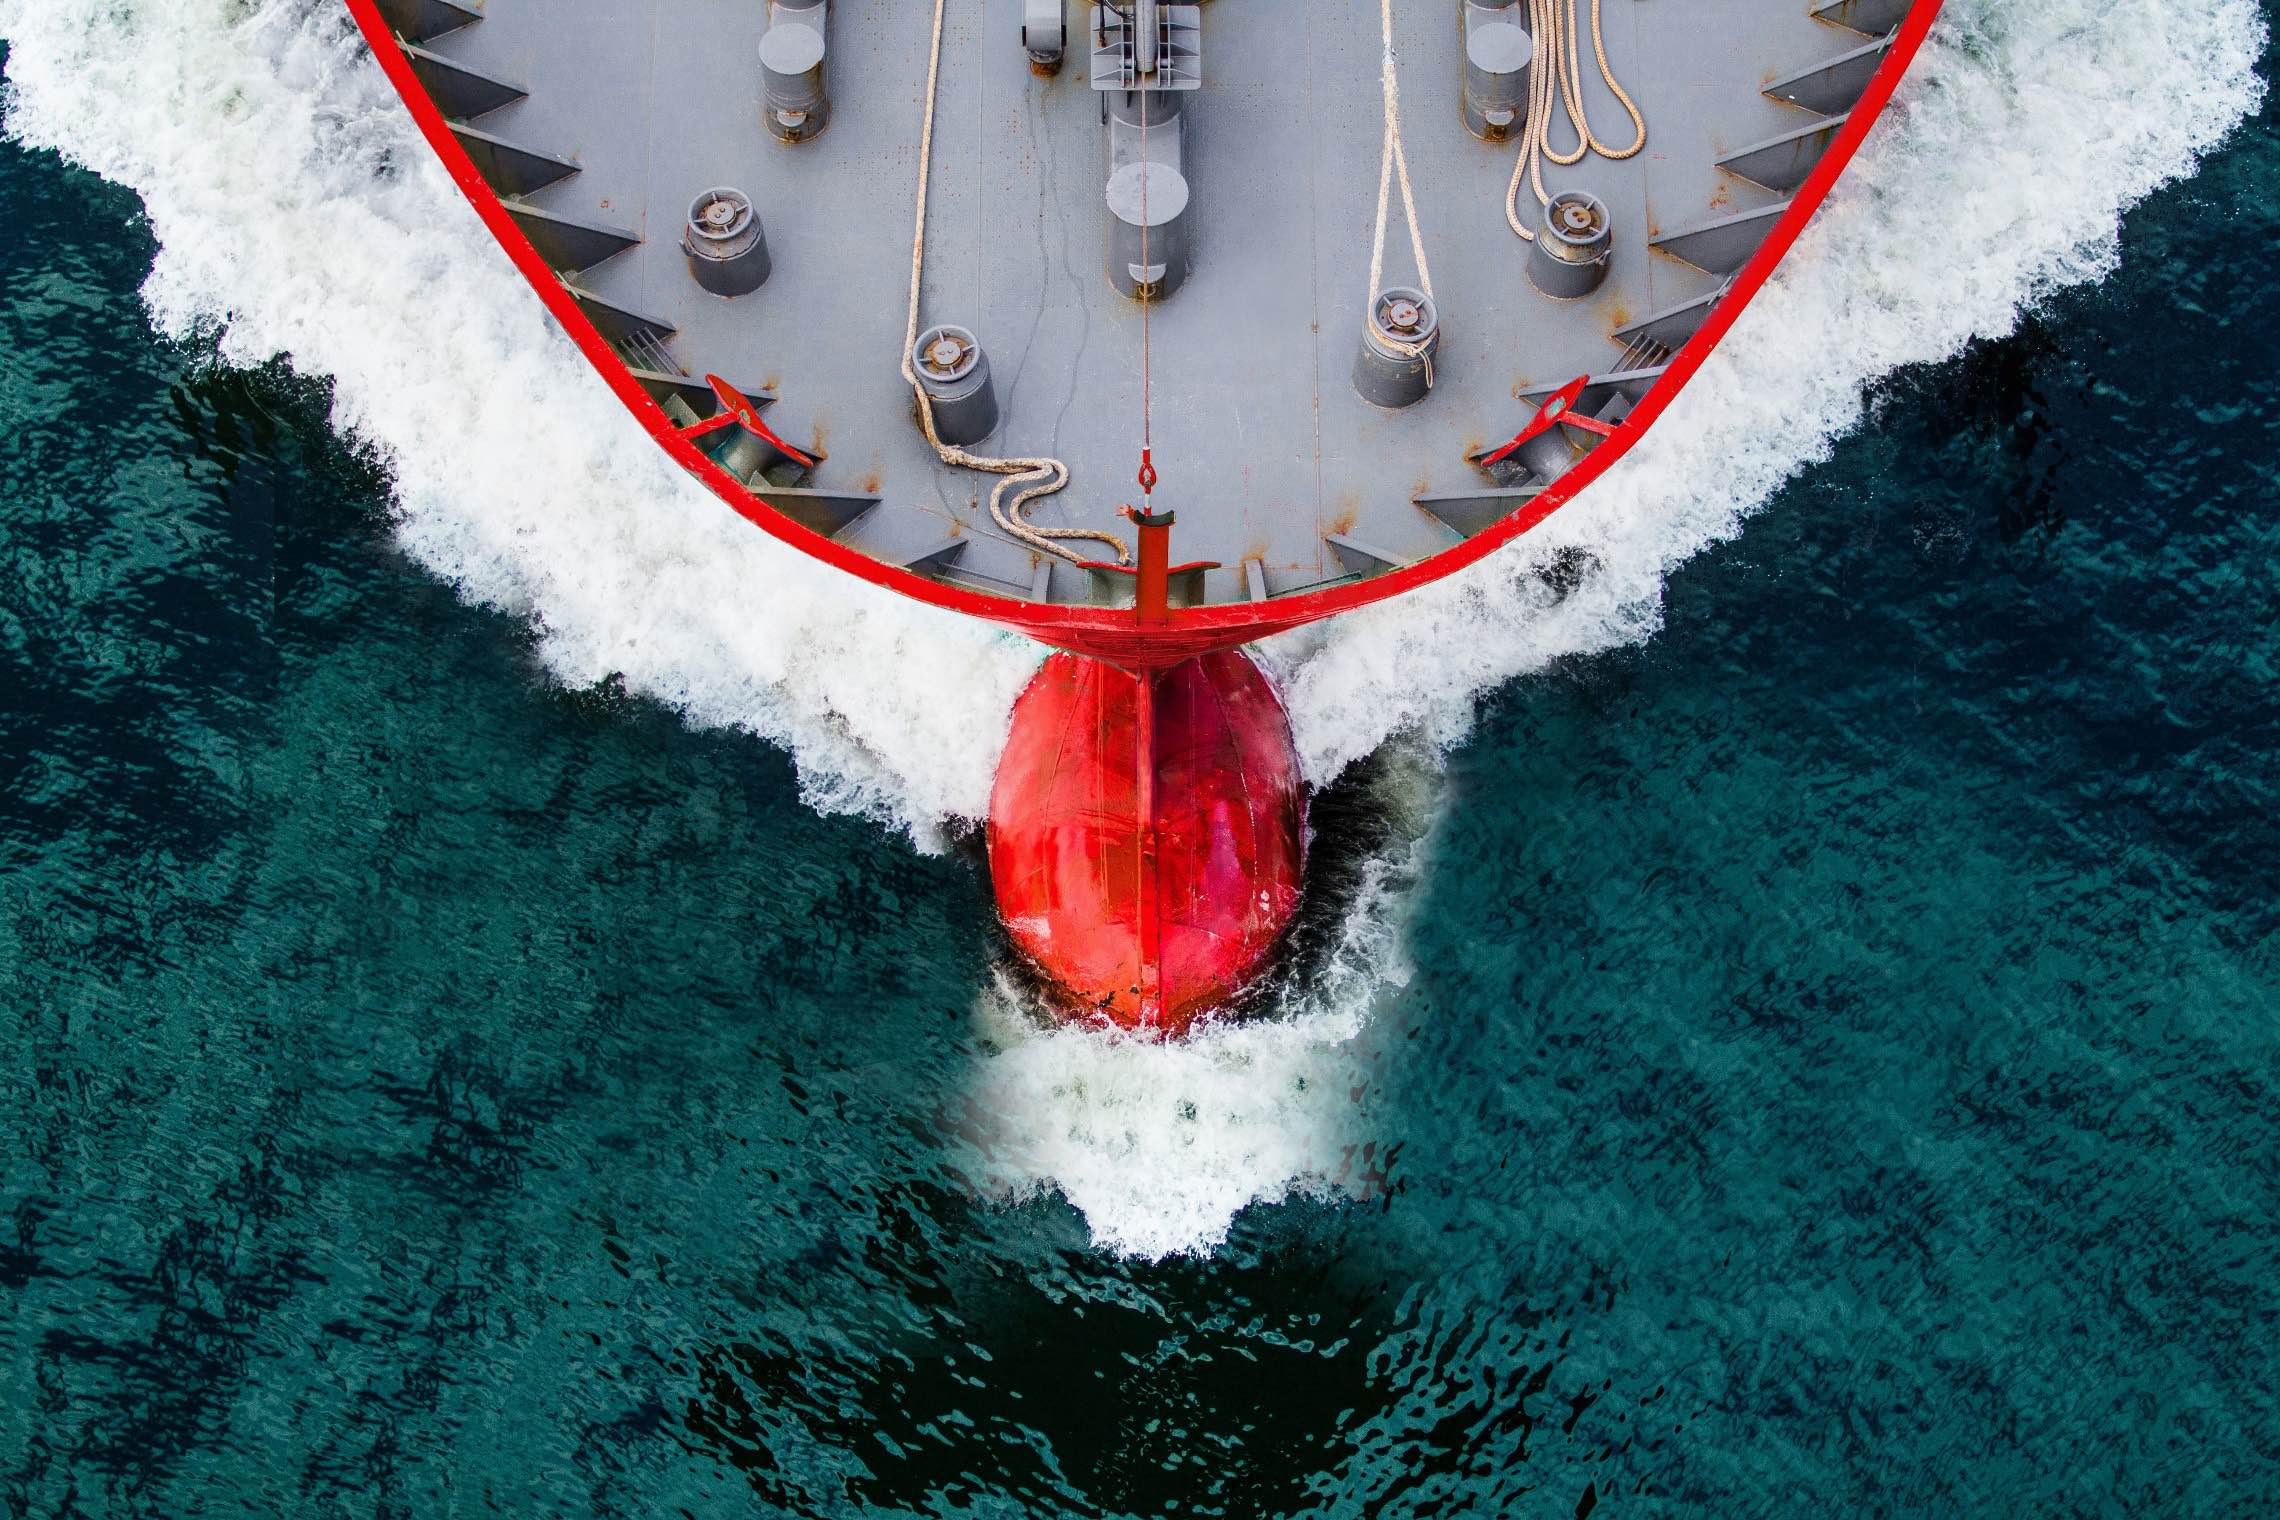 Vessel management software